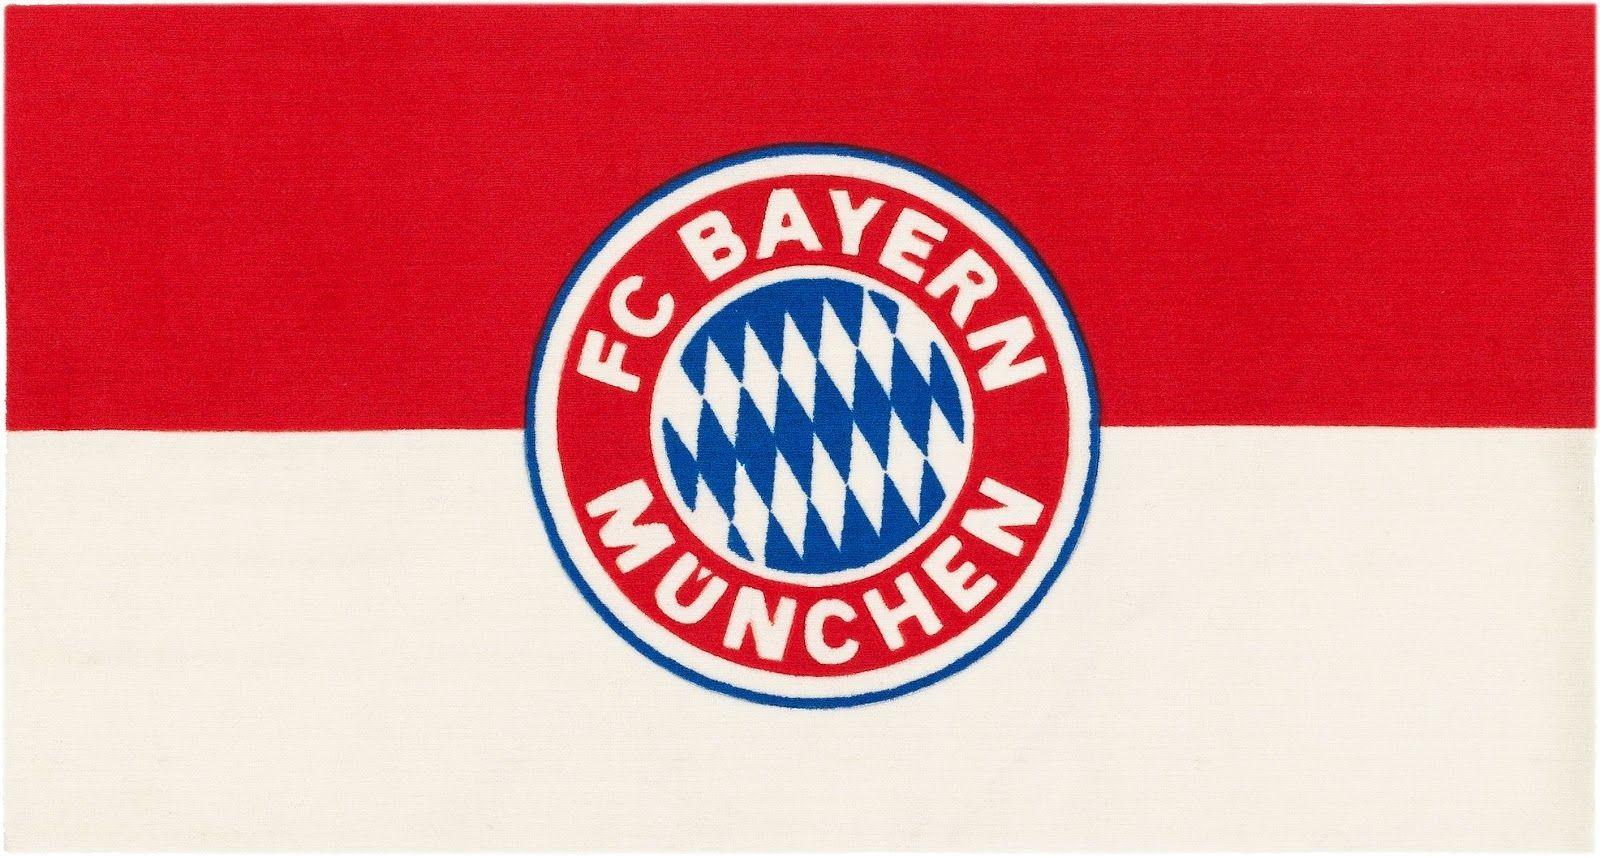 Fc Bayern Munchen Wallpaper